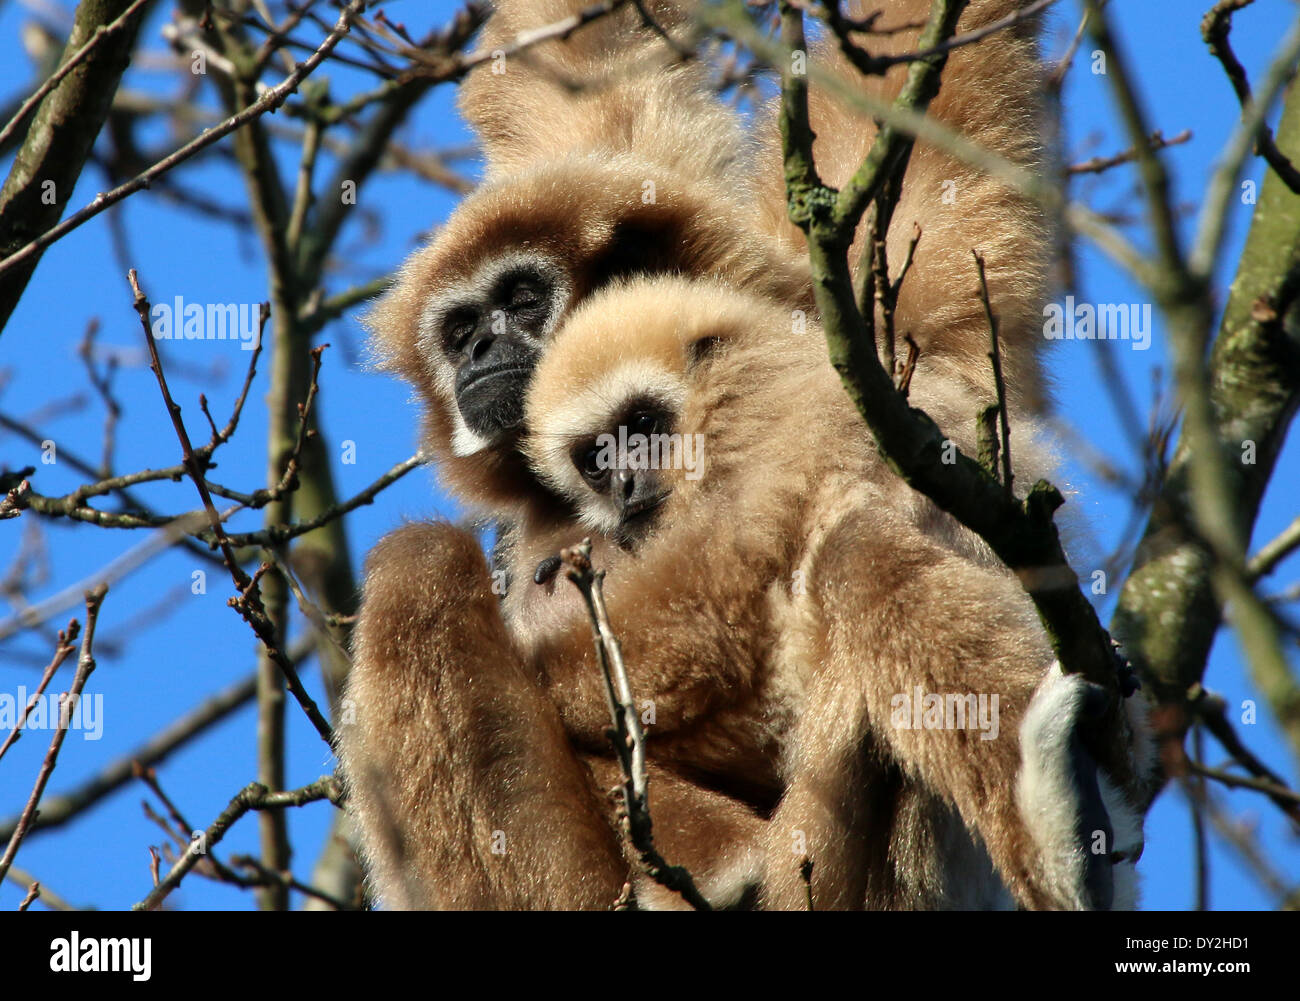 Lar gibbone o White-Handed gibbone madre (Hylobates lar) in una struttura ad albero con youngster Foto Stock